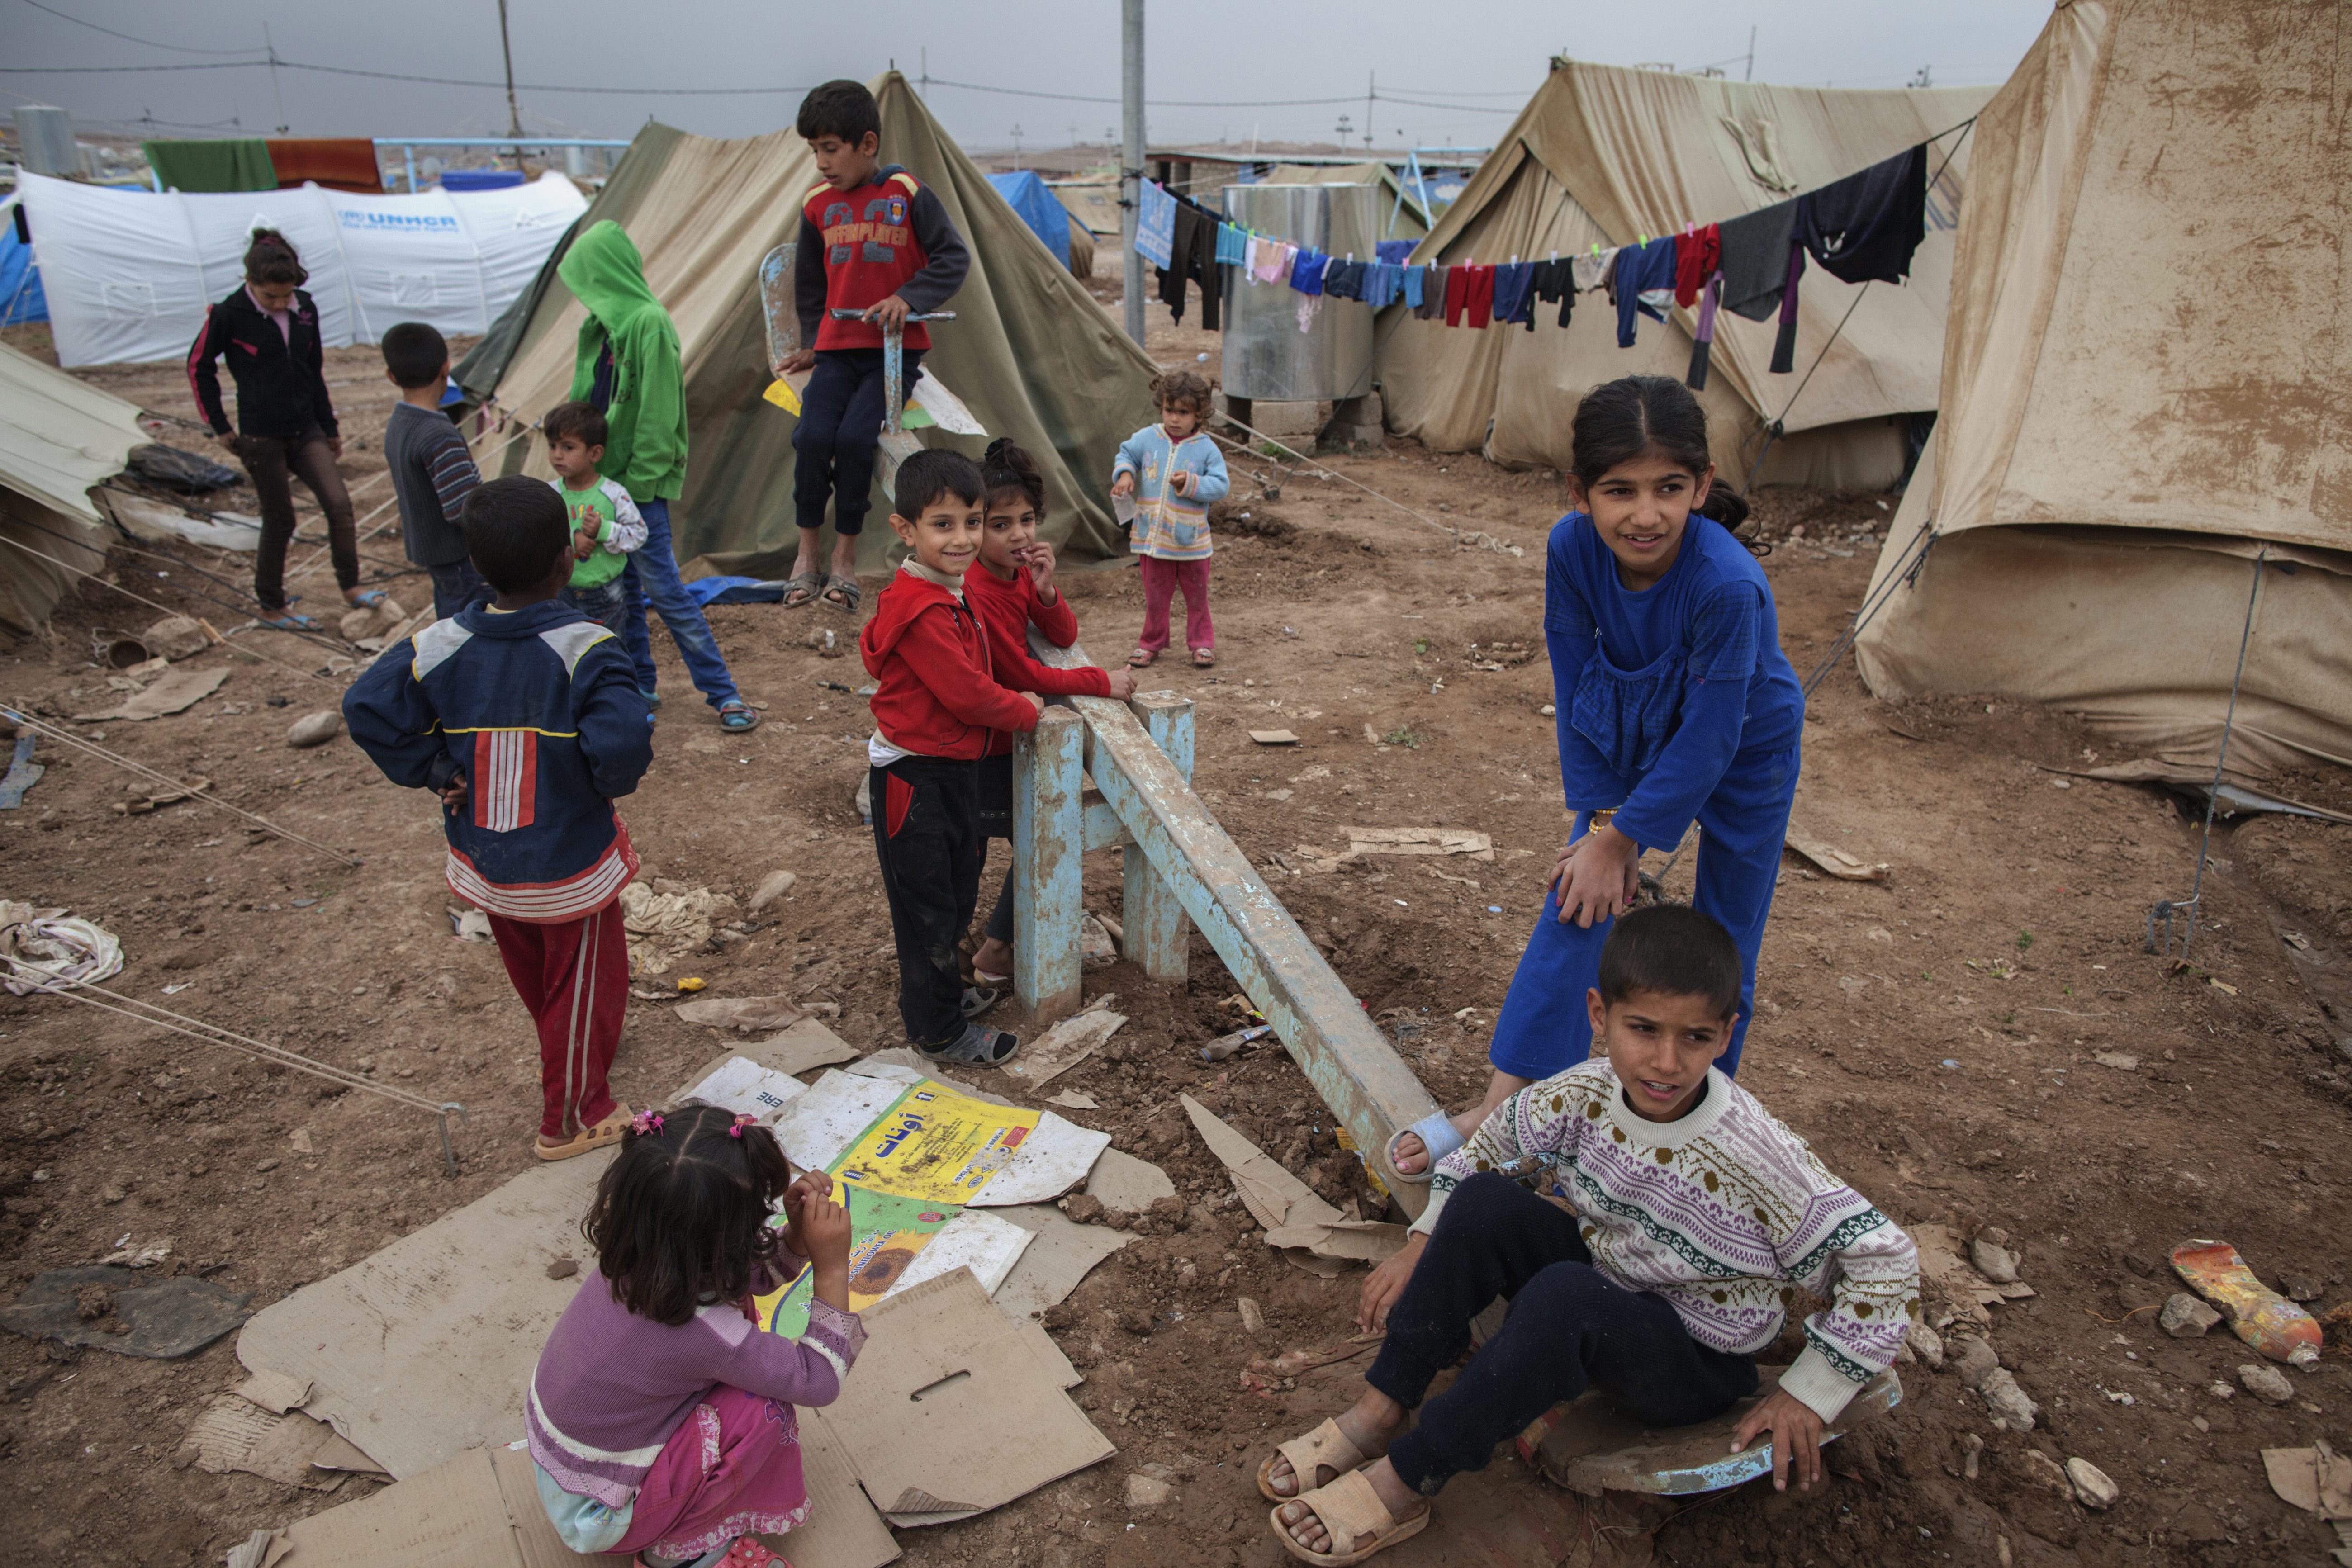 联合国难民署关注逃亡到伊拉克的叙利亚难民数目有所增加